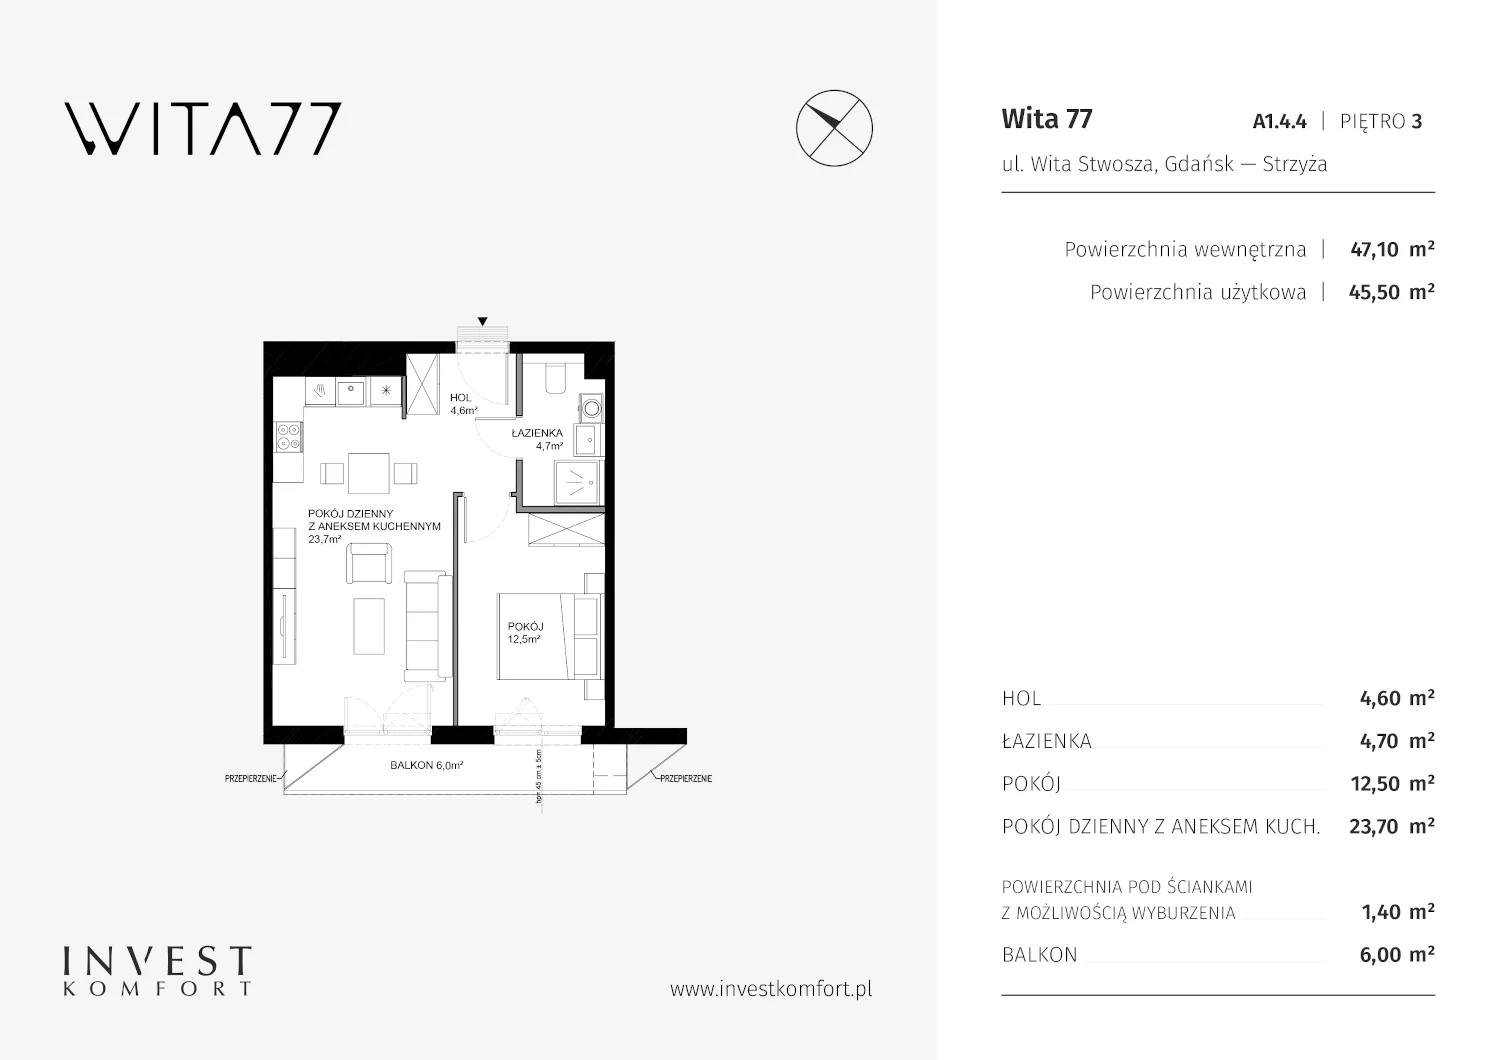 Mieszkanie 47,10 m², piętro 3, oferta nr A1.4.4, Wita 77, Gdańsk, Strzyża, ul. Wita Stwosza 77